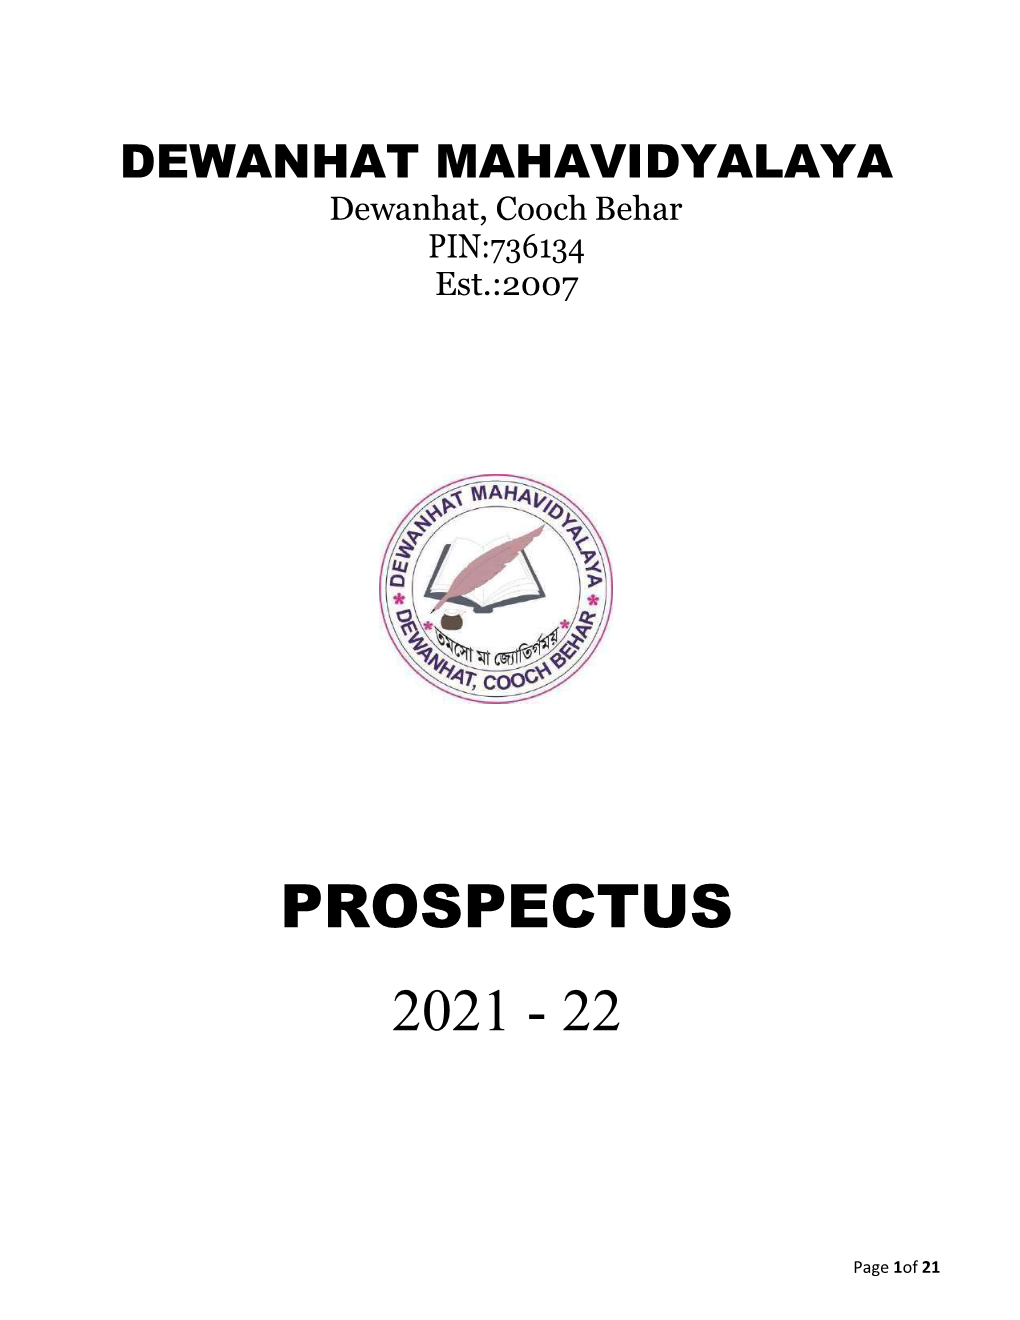 Prospectus 2021 - 22